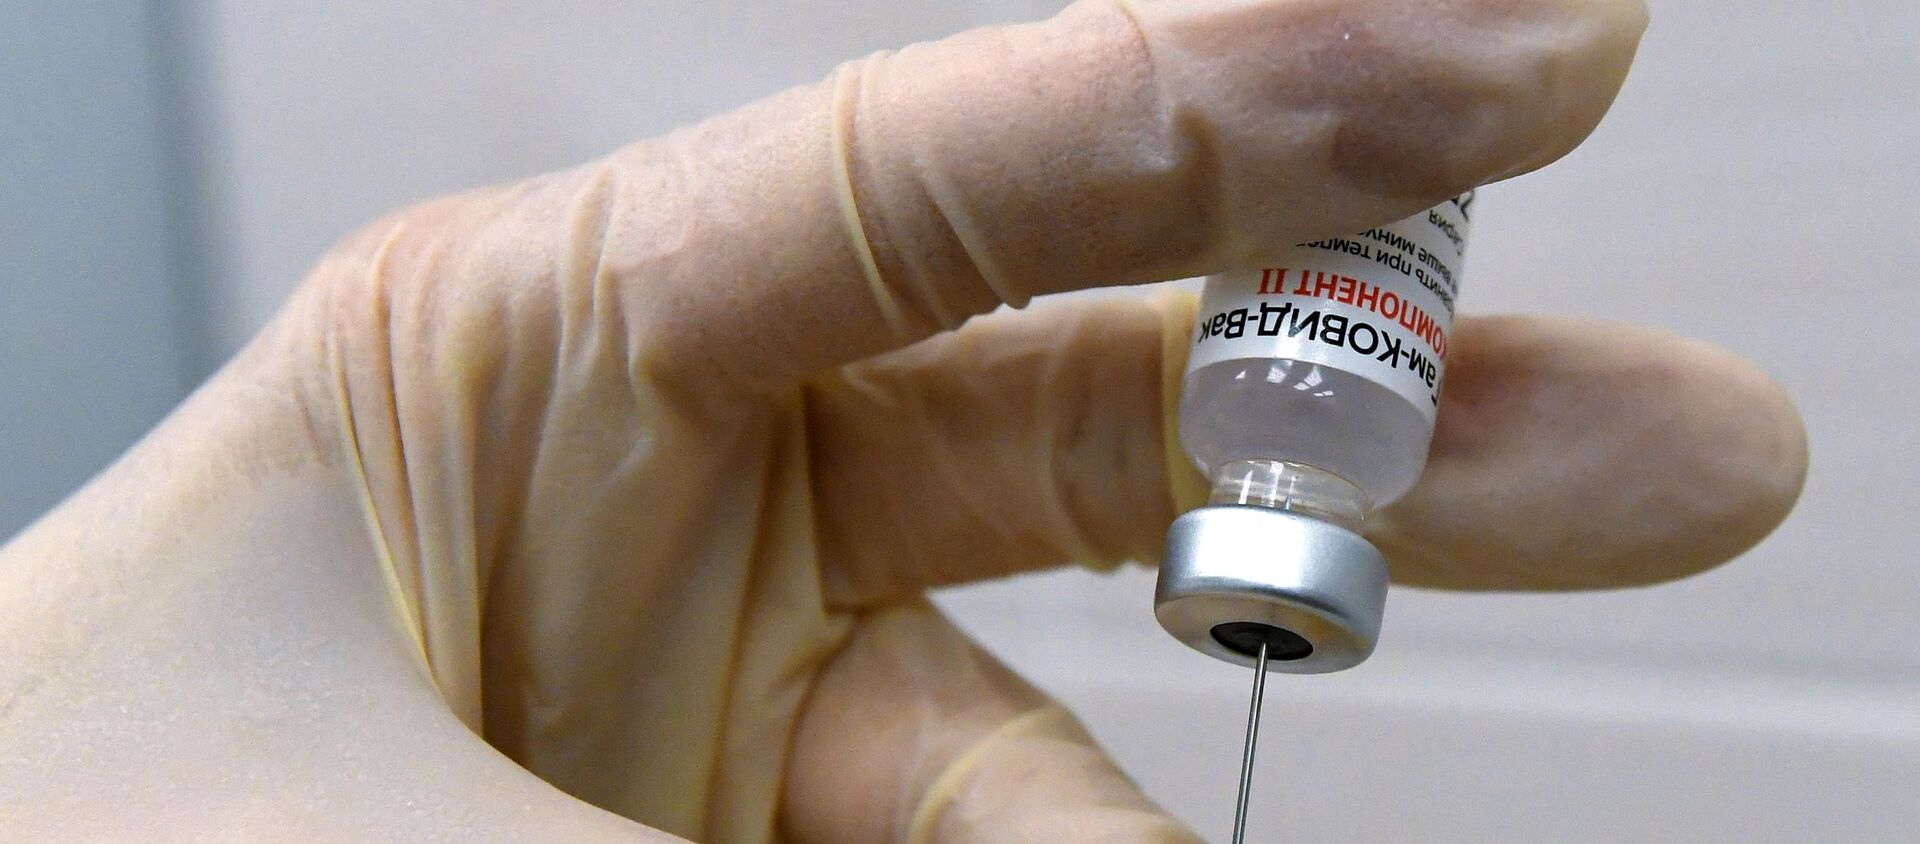 Медсестра набирает в шприц вакцину против COVID-19 Спутник V (Гам-КОВИД-Вак) - Sputnik Lietuva, 1920, 19.02.2021